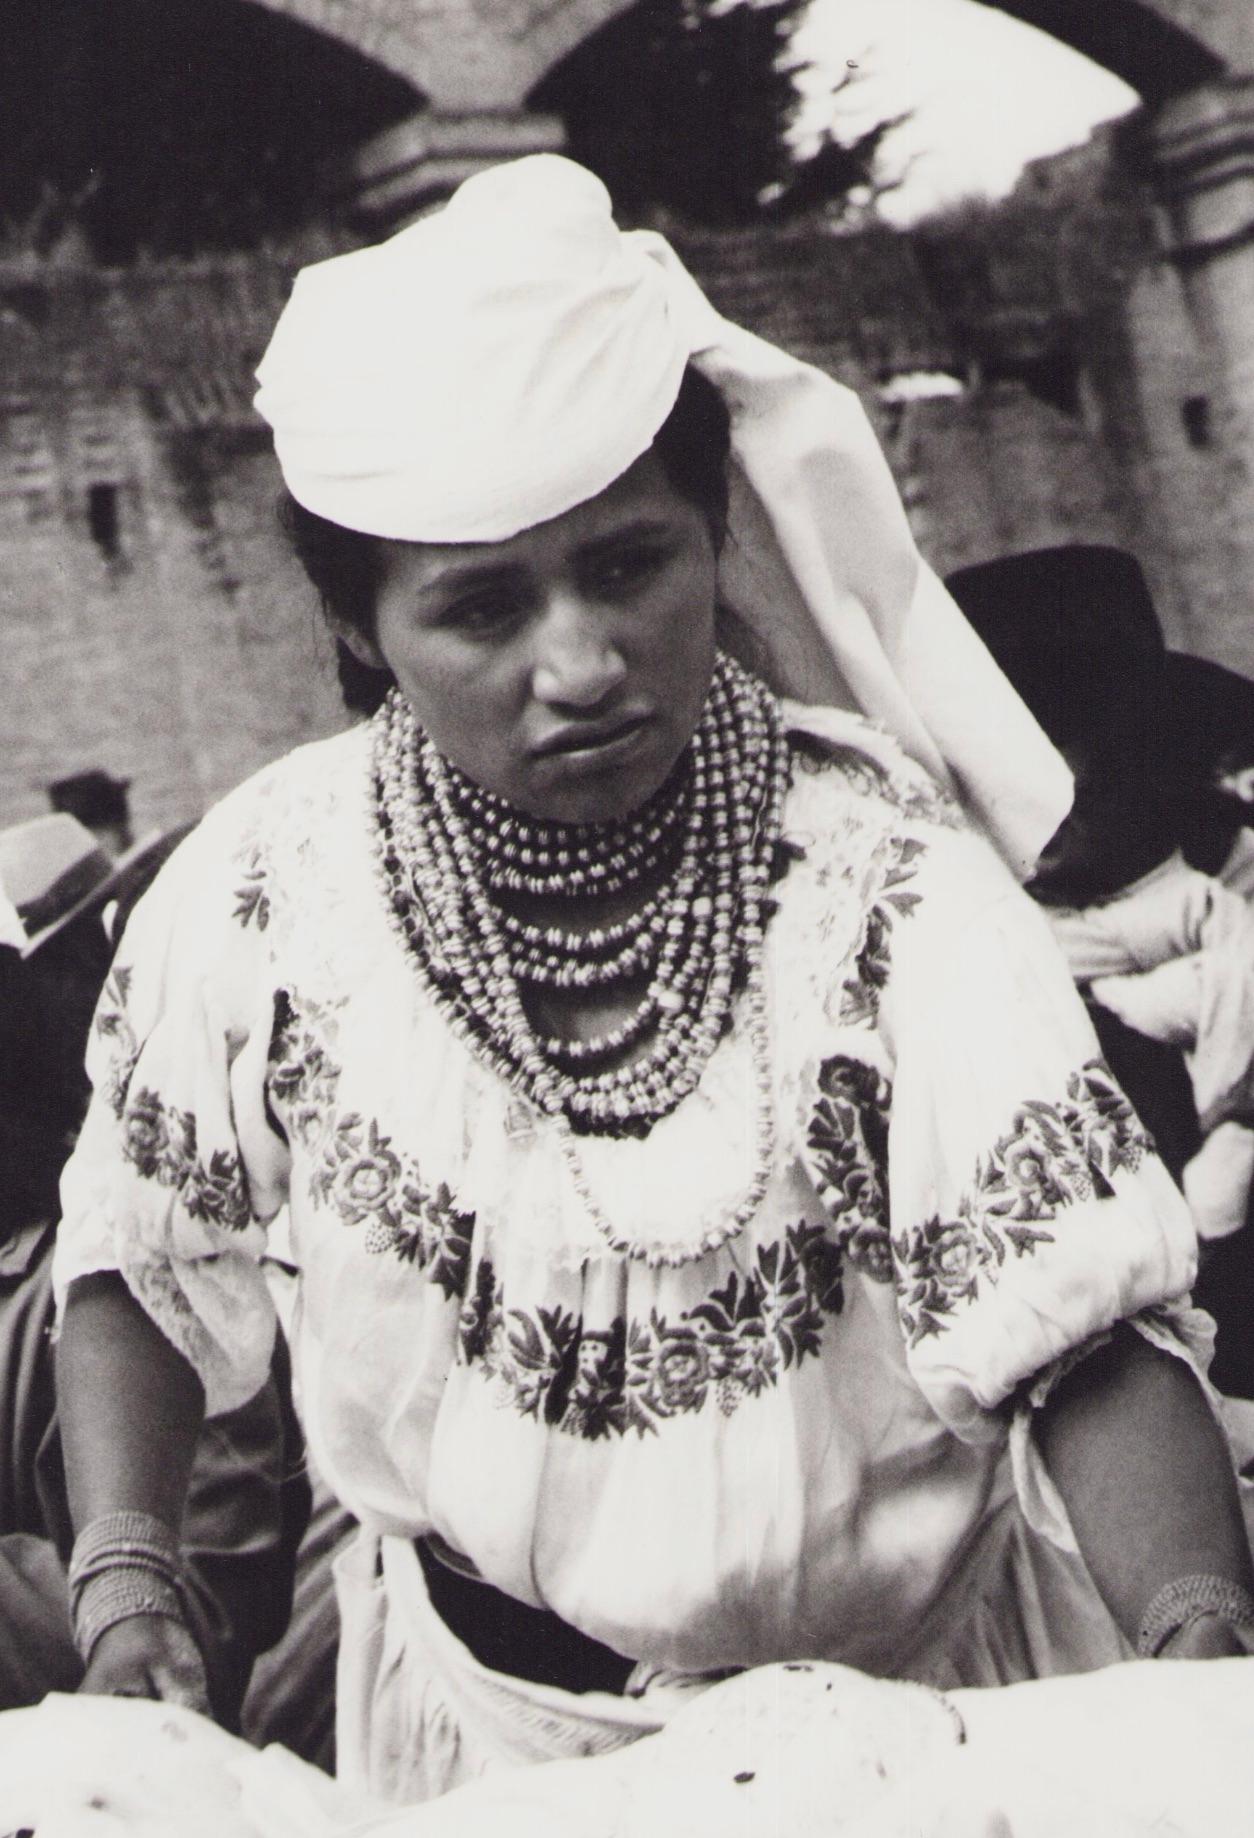 Équateur, Femme, marché, photographie en noir et blanc, années 1960, 28,2 x 23,1 cm - Photograph de Hanna Seidel